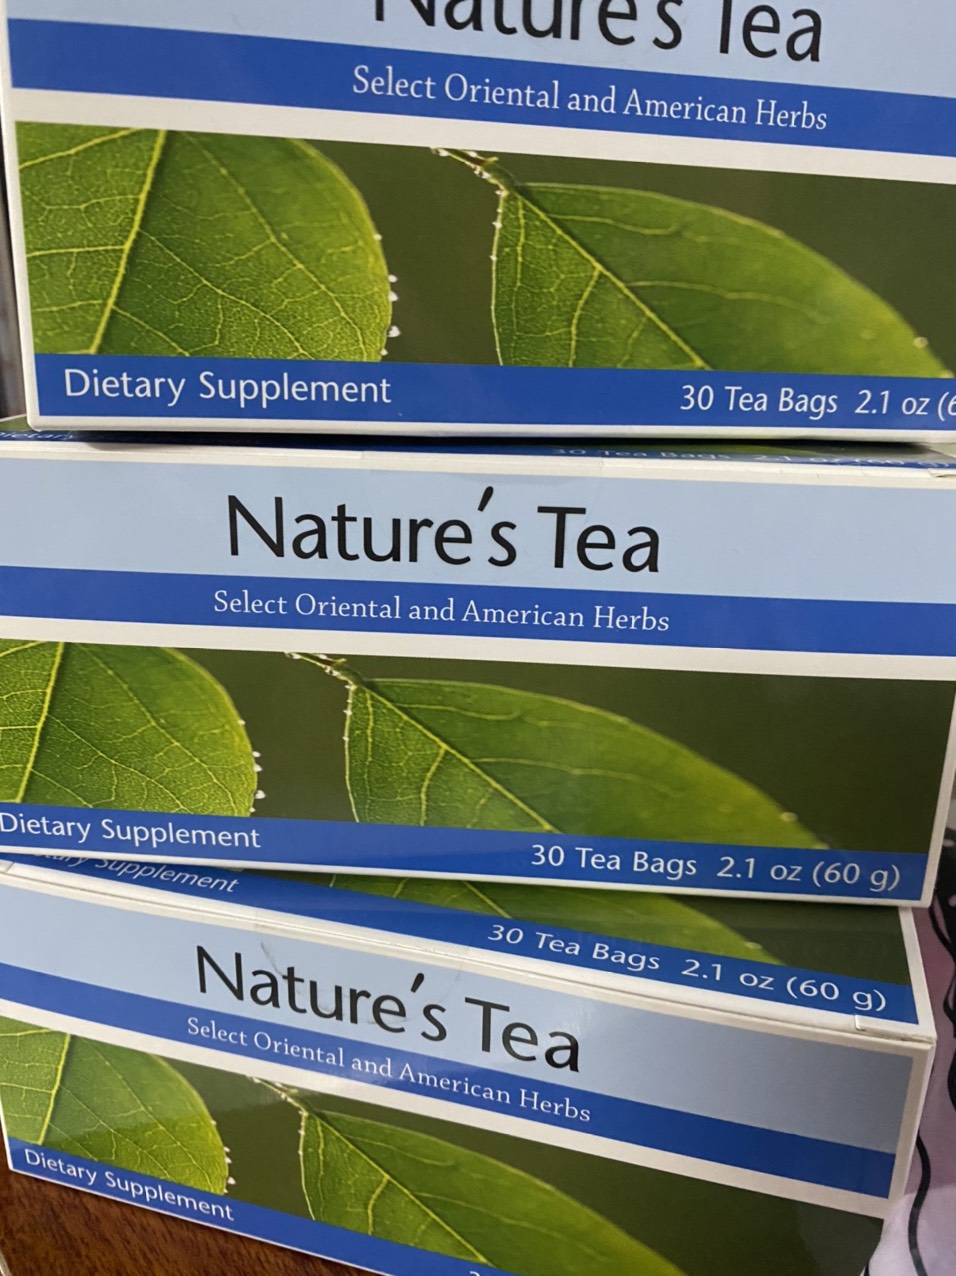 1 Hop Tra thai doc ruot - Nature tea